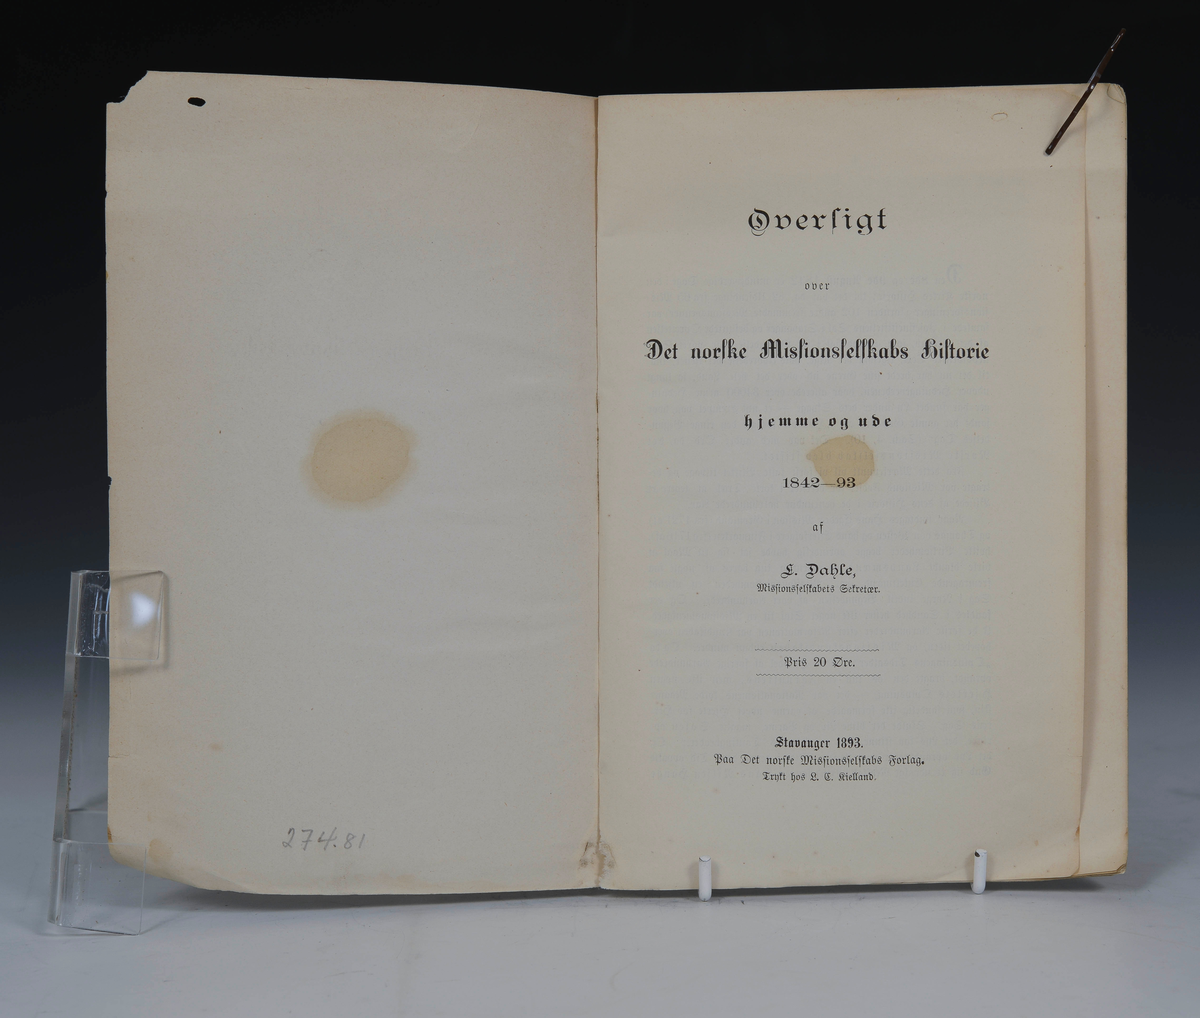 Dahle, L. Oversigt over Det norske Missionsselskabs Historie hjemme og ude. 1842-93. Stavanger 1893.